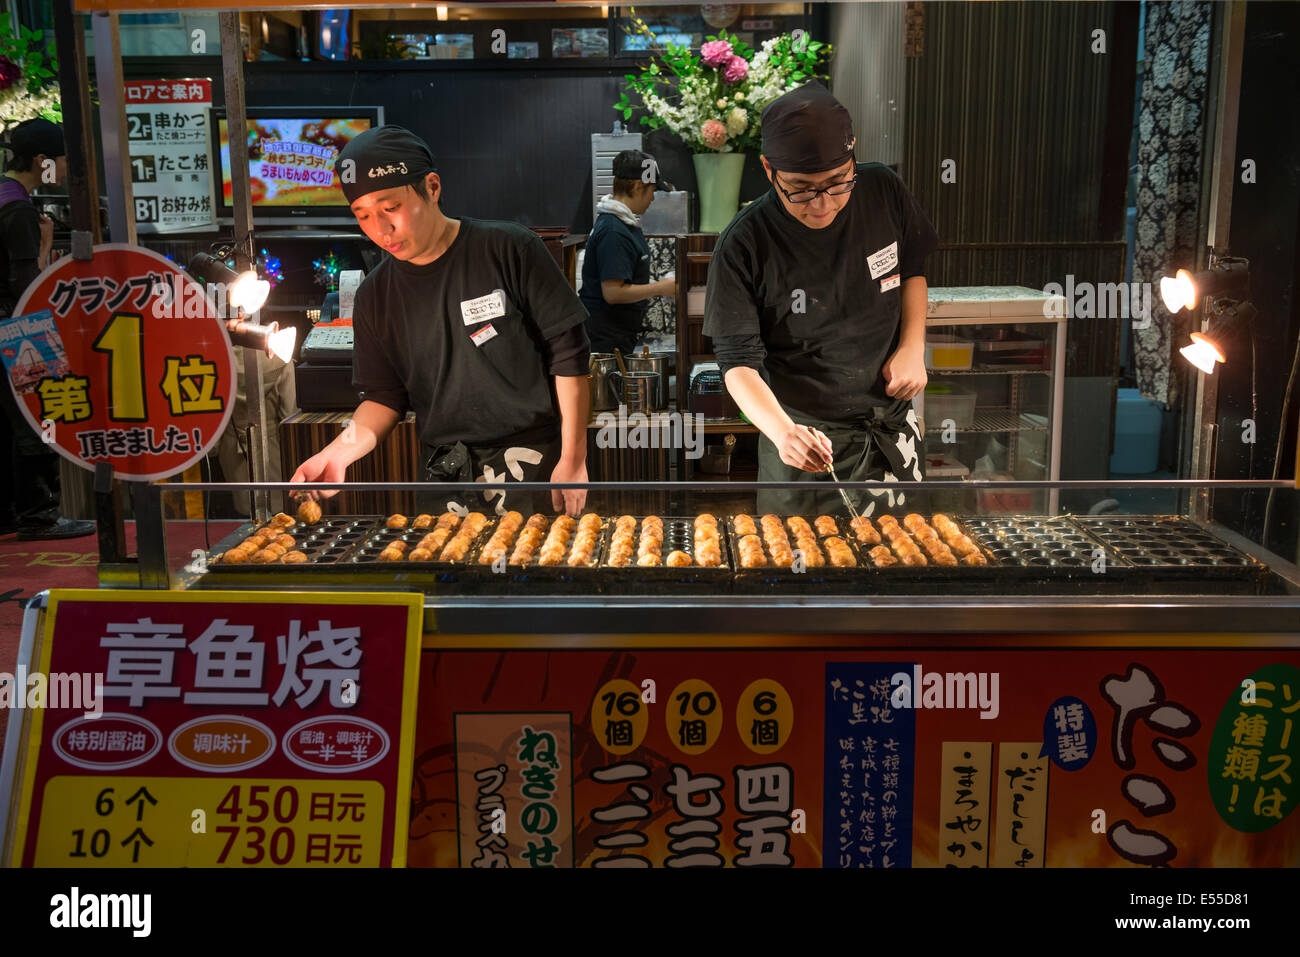 Bánh Takoyaki là đồ ăn nhẹ rất được ưa chuộng ở đường phố Nhật Bản